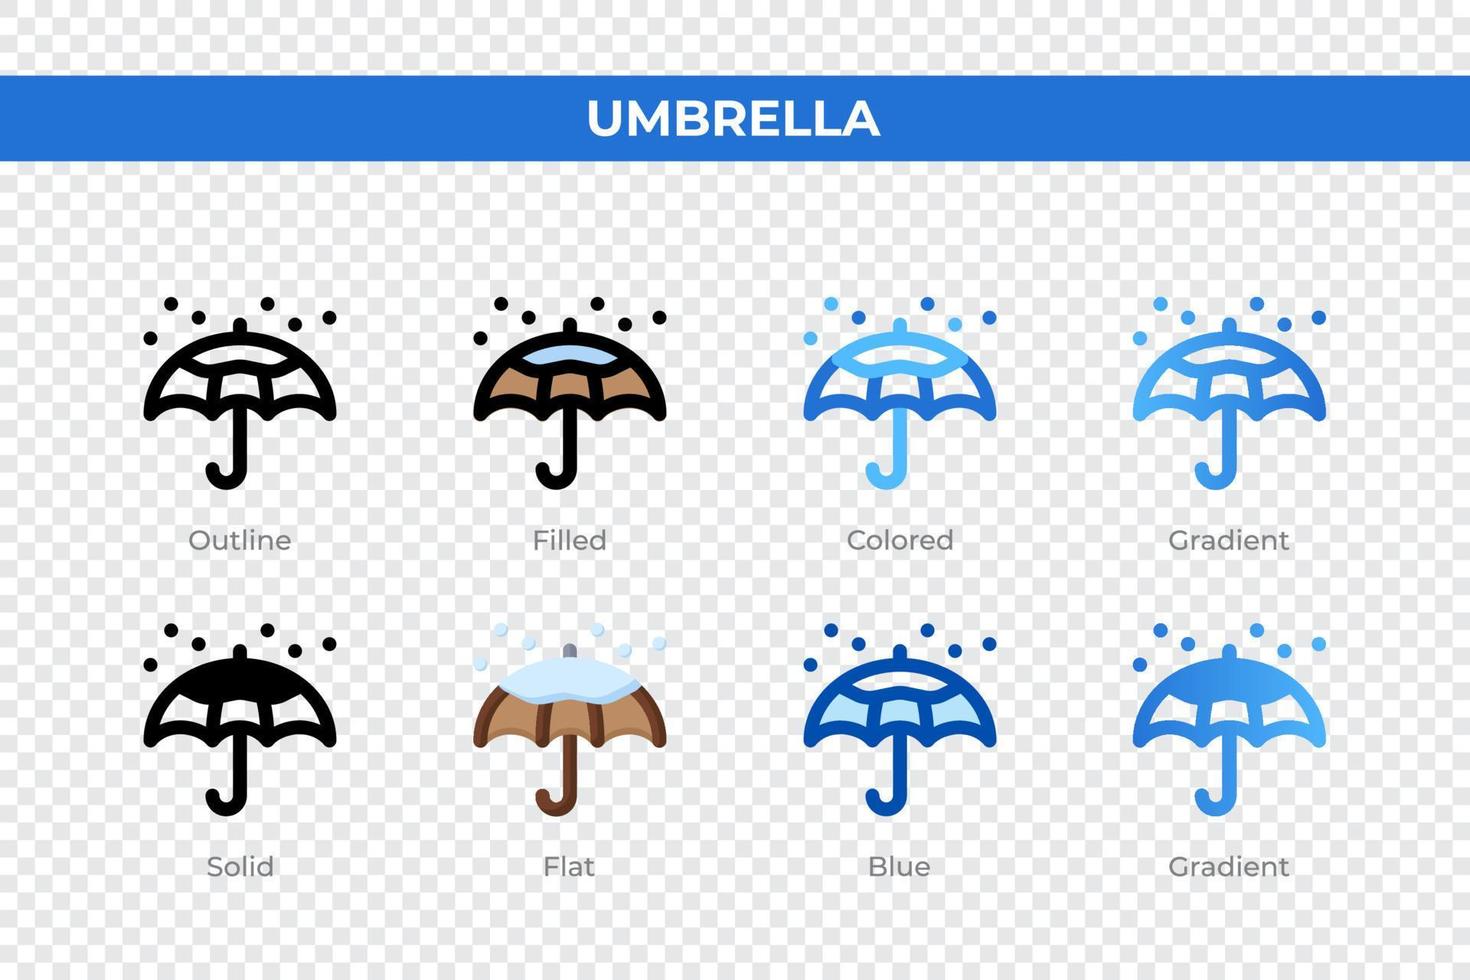 Umbrella icons in different style. Umbrella icons set. Holiday symbol. Different style icons set. Vector illustration